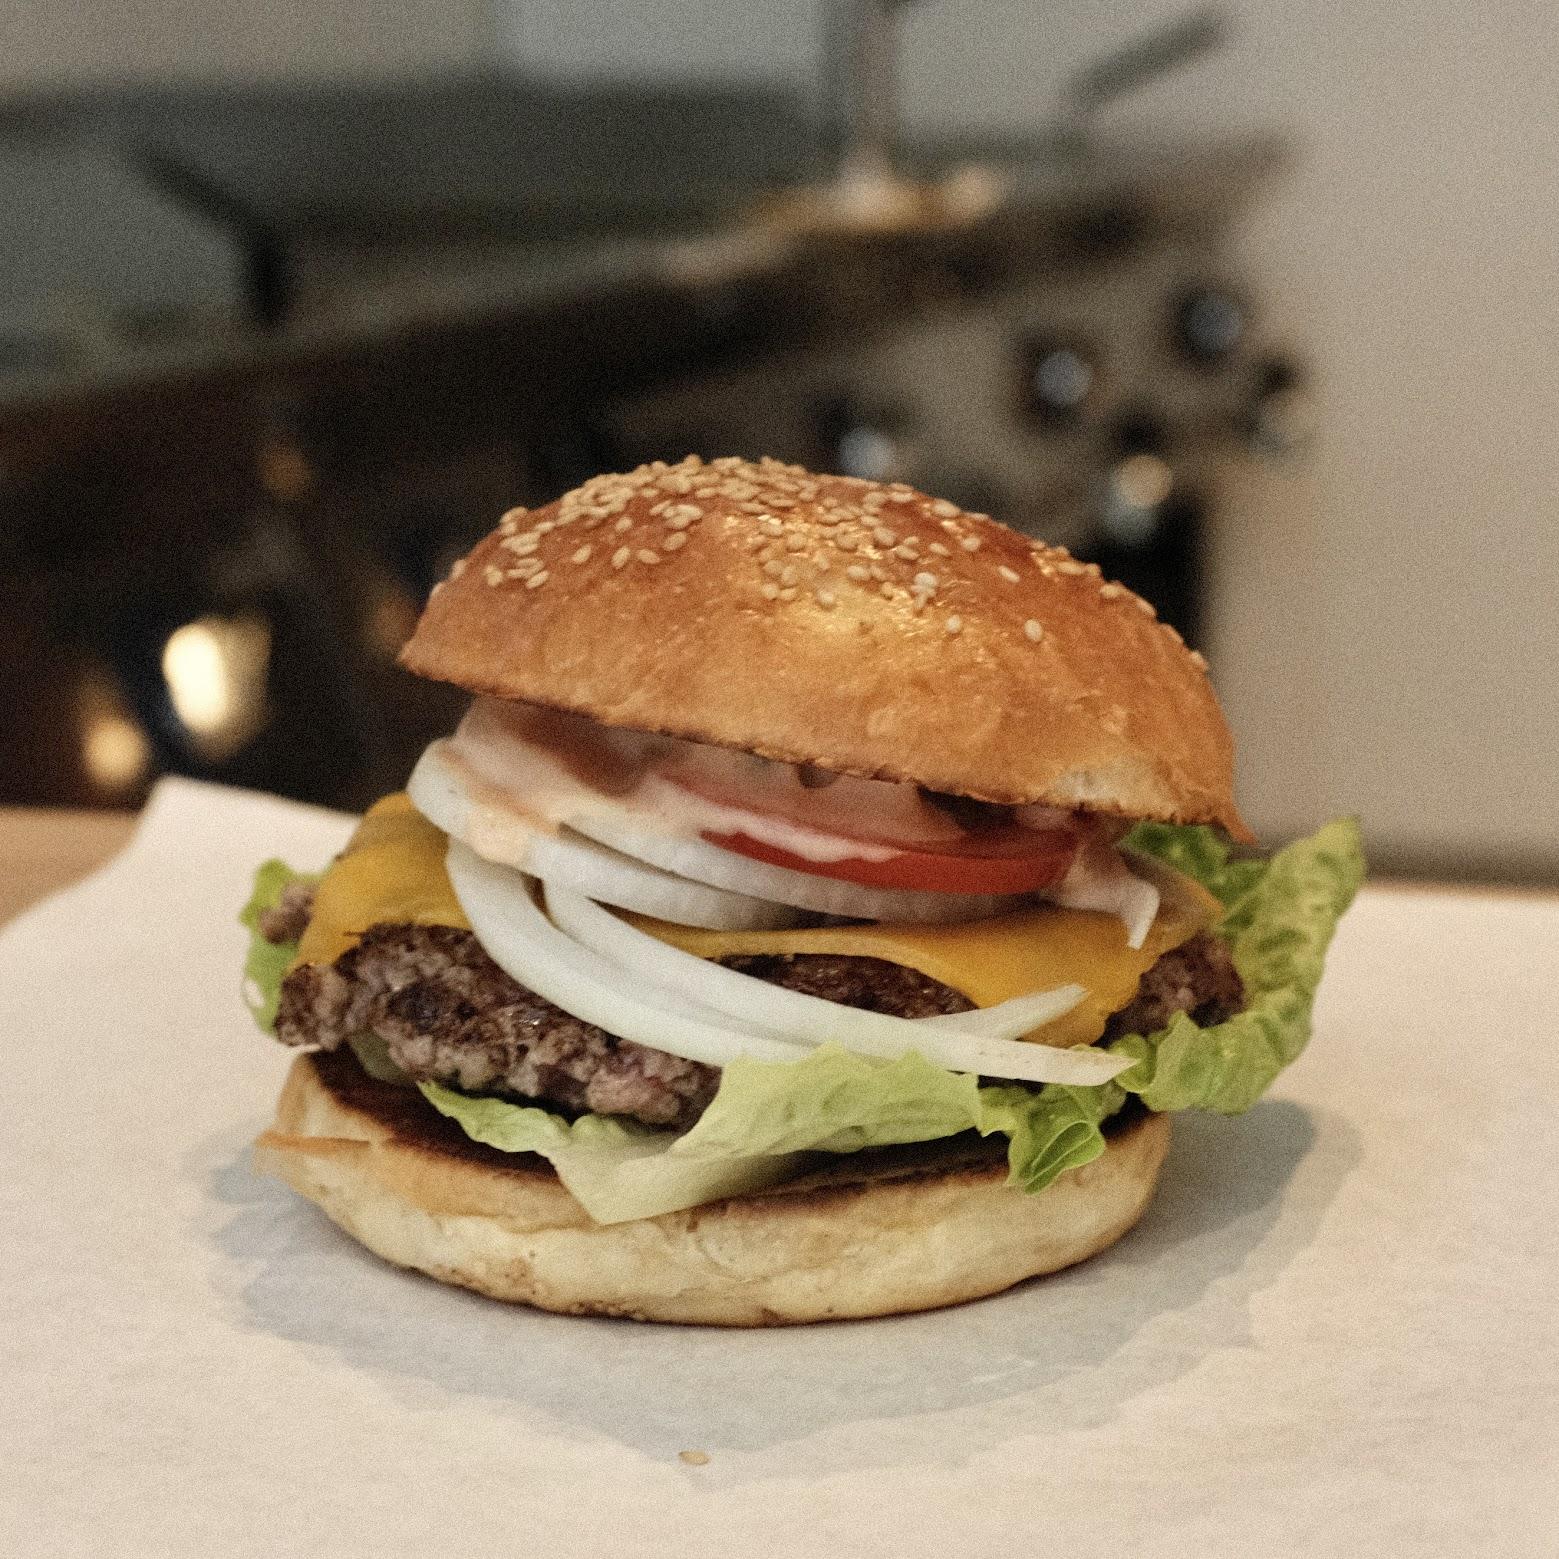 Restaurant "Bulle Burger" in Düsseldorf